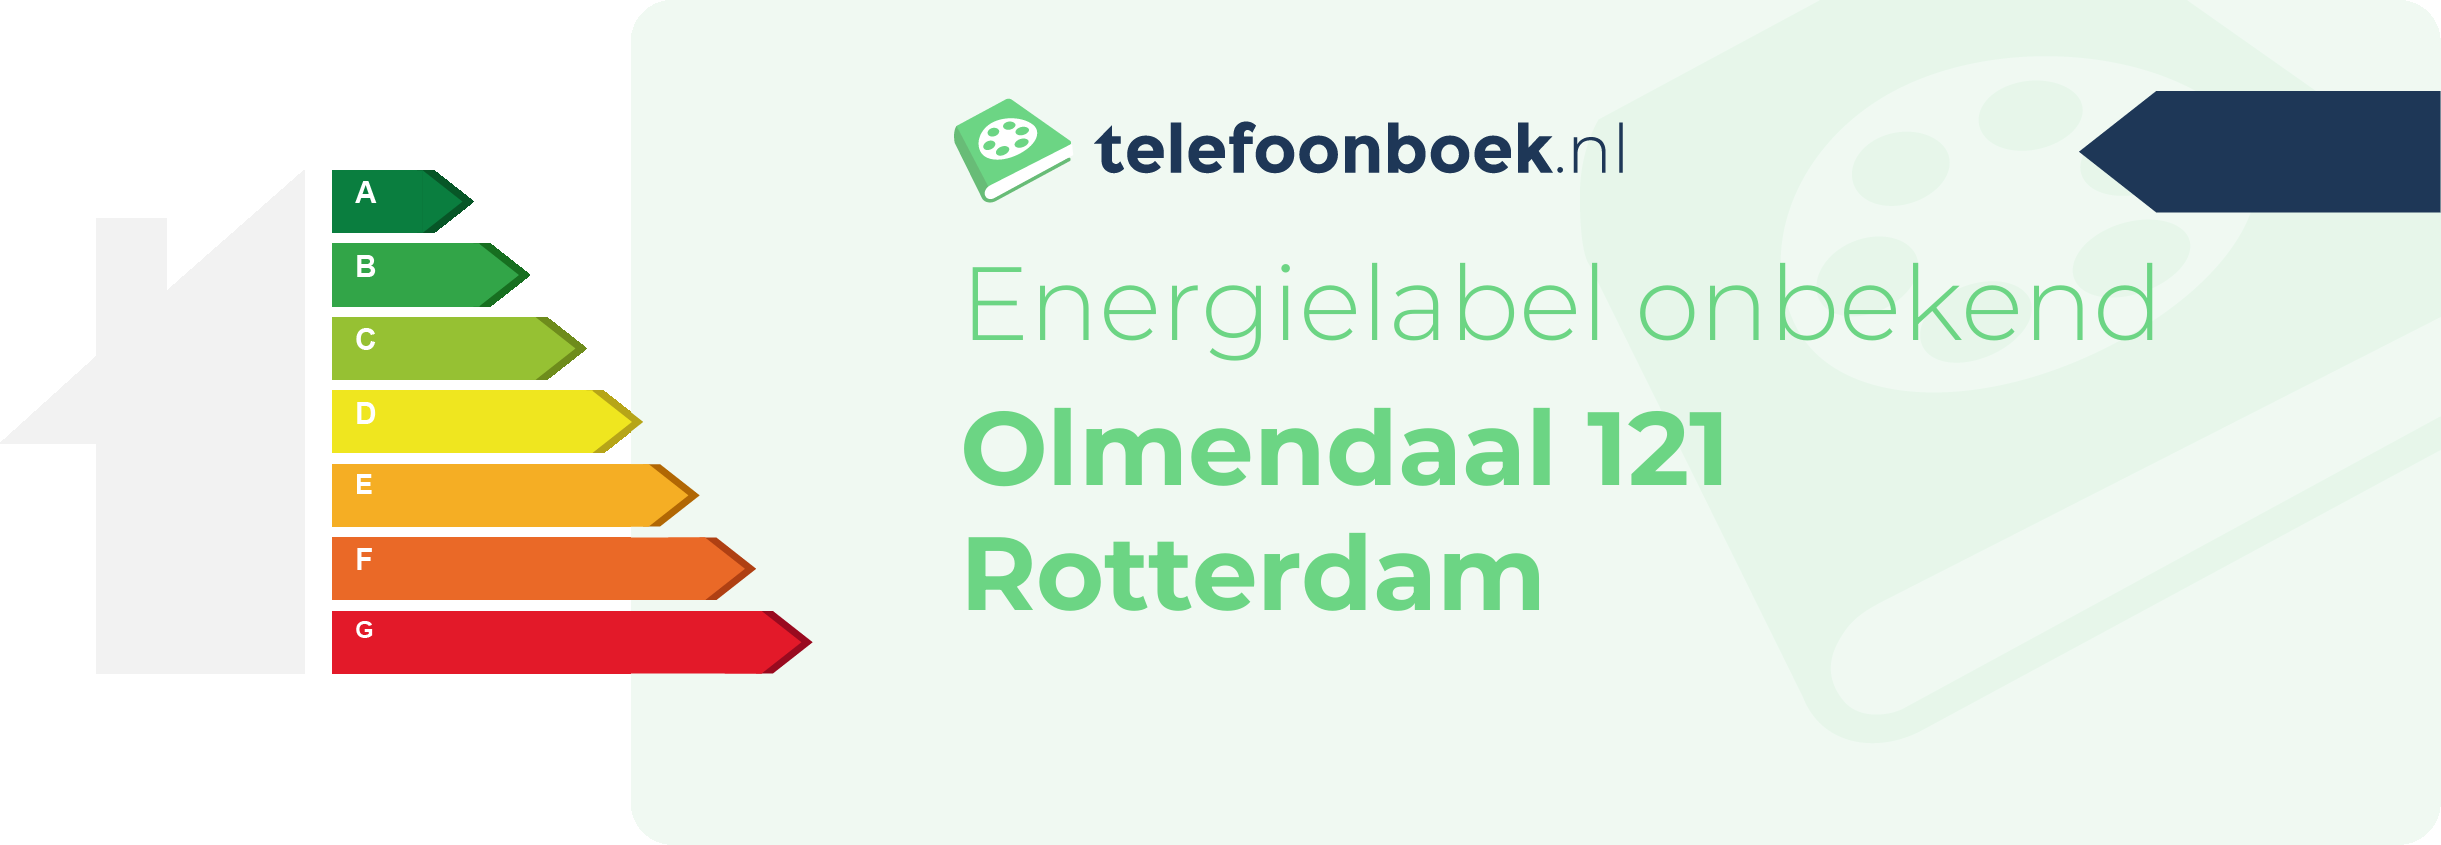 Energielabel Olmendaal 121 Rotterdam